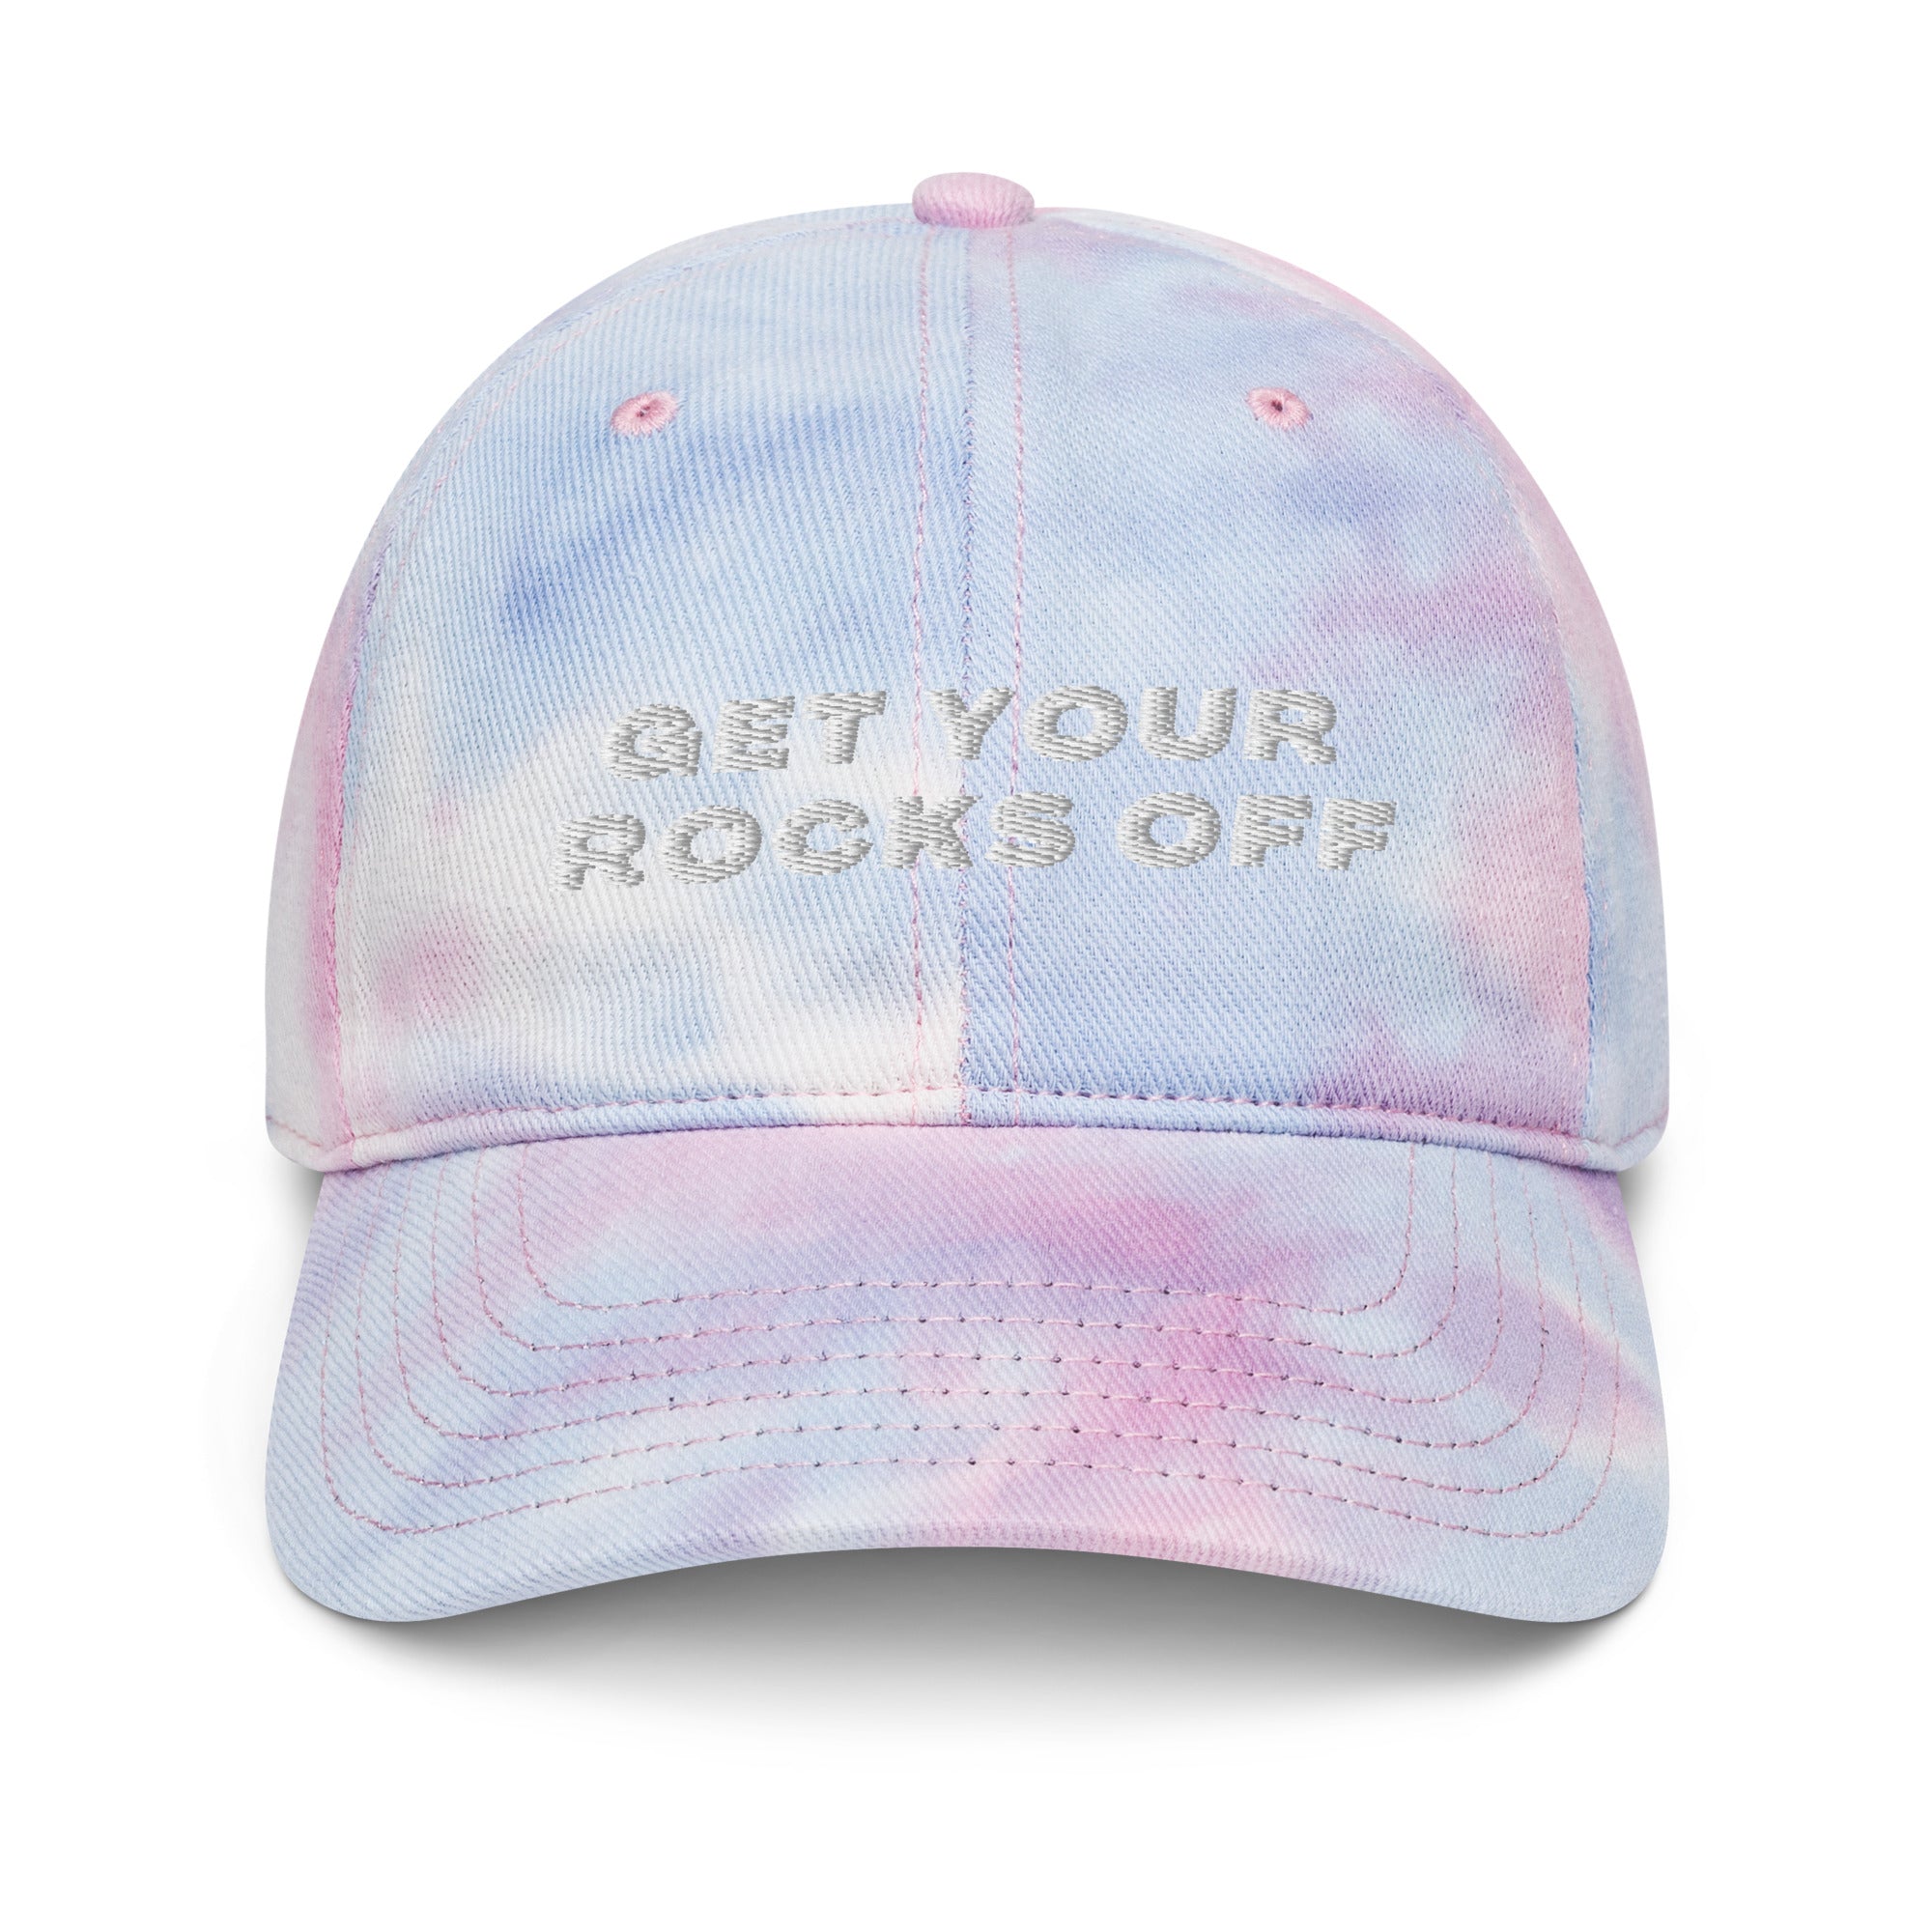 Get Your Rocks Off Tie Dye Cap